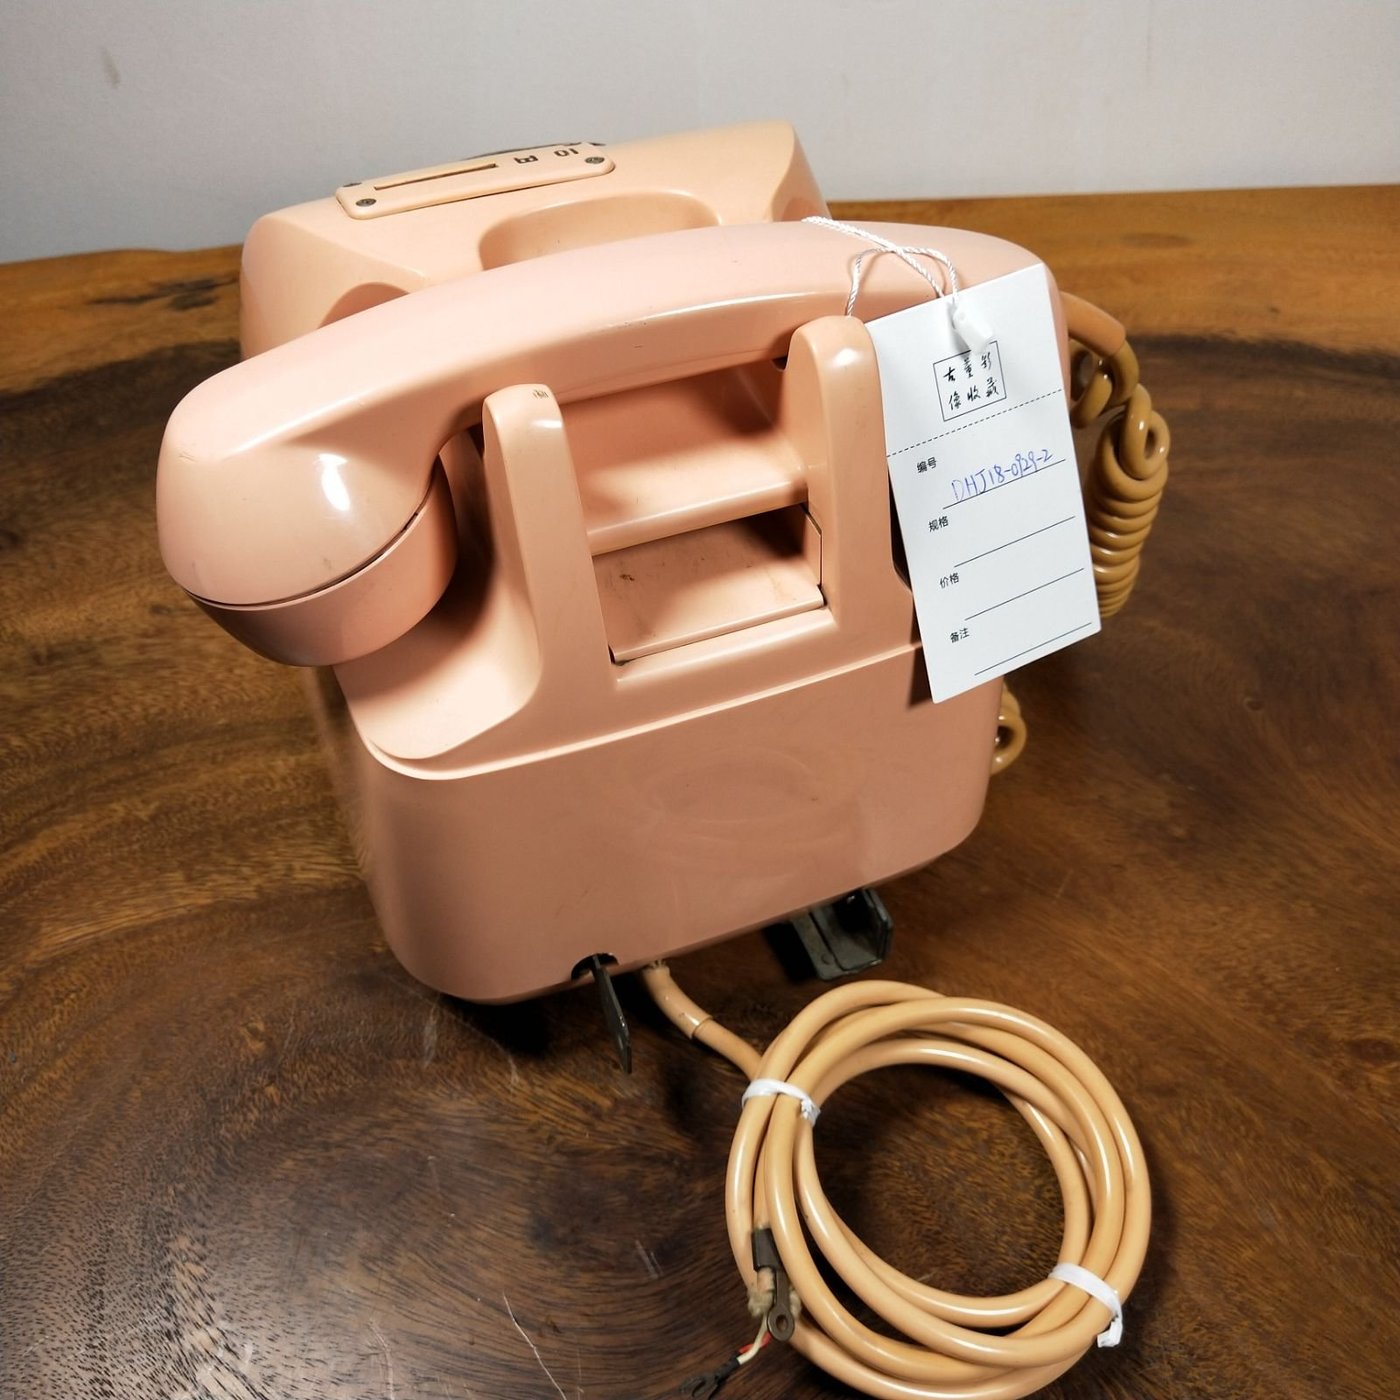 百寶軒古董昭和48年日本電信電話公社投幣式老式旋轉撥盤電話機ZG2808 